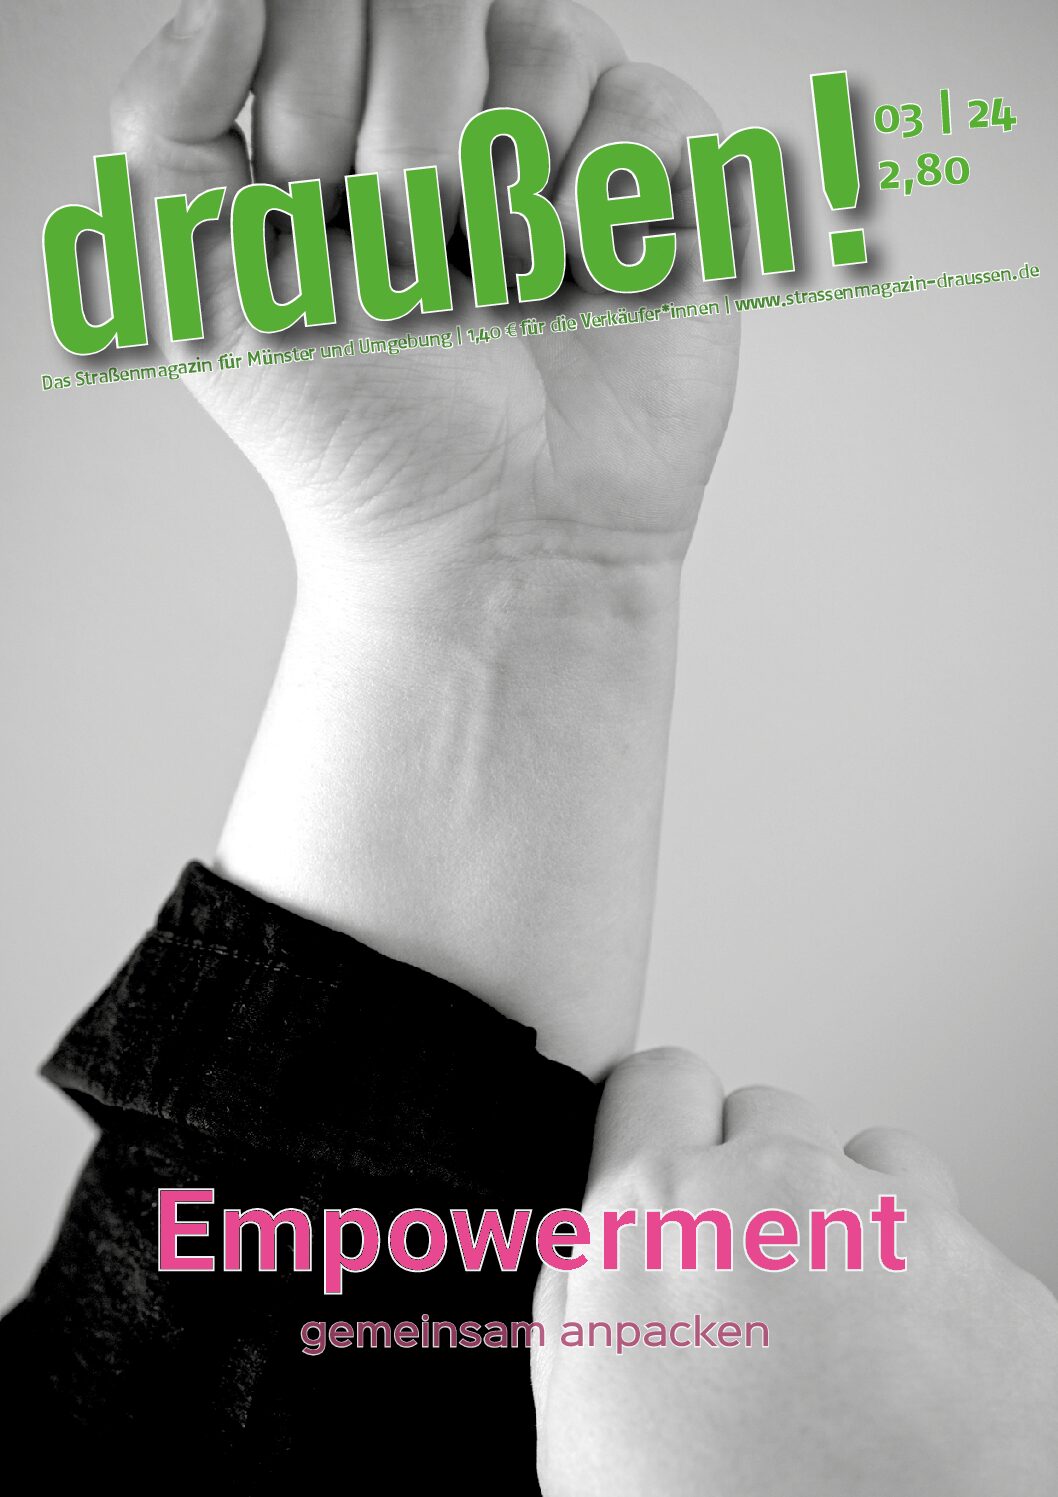 Empowerment - gemeinsam anpacken